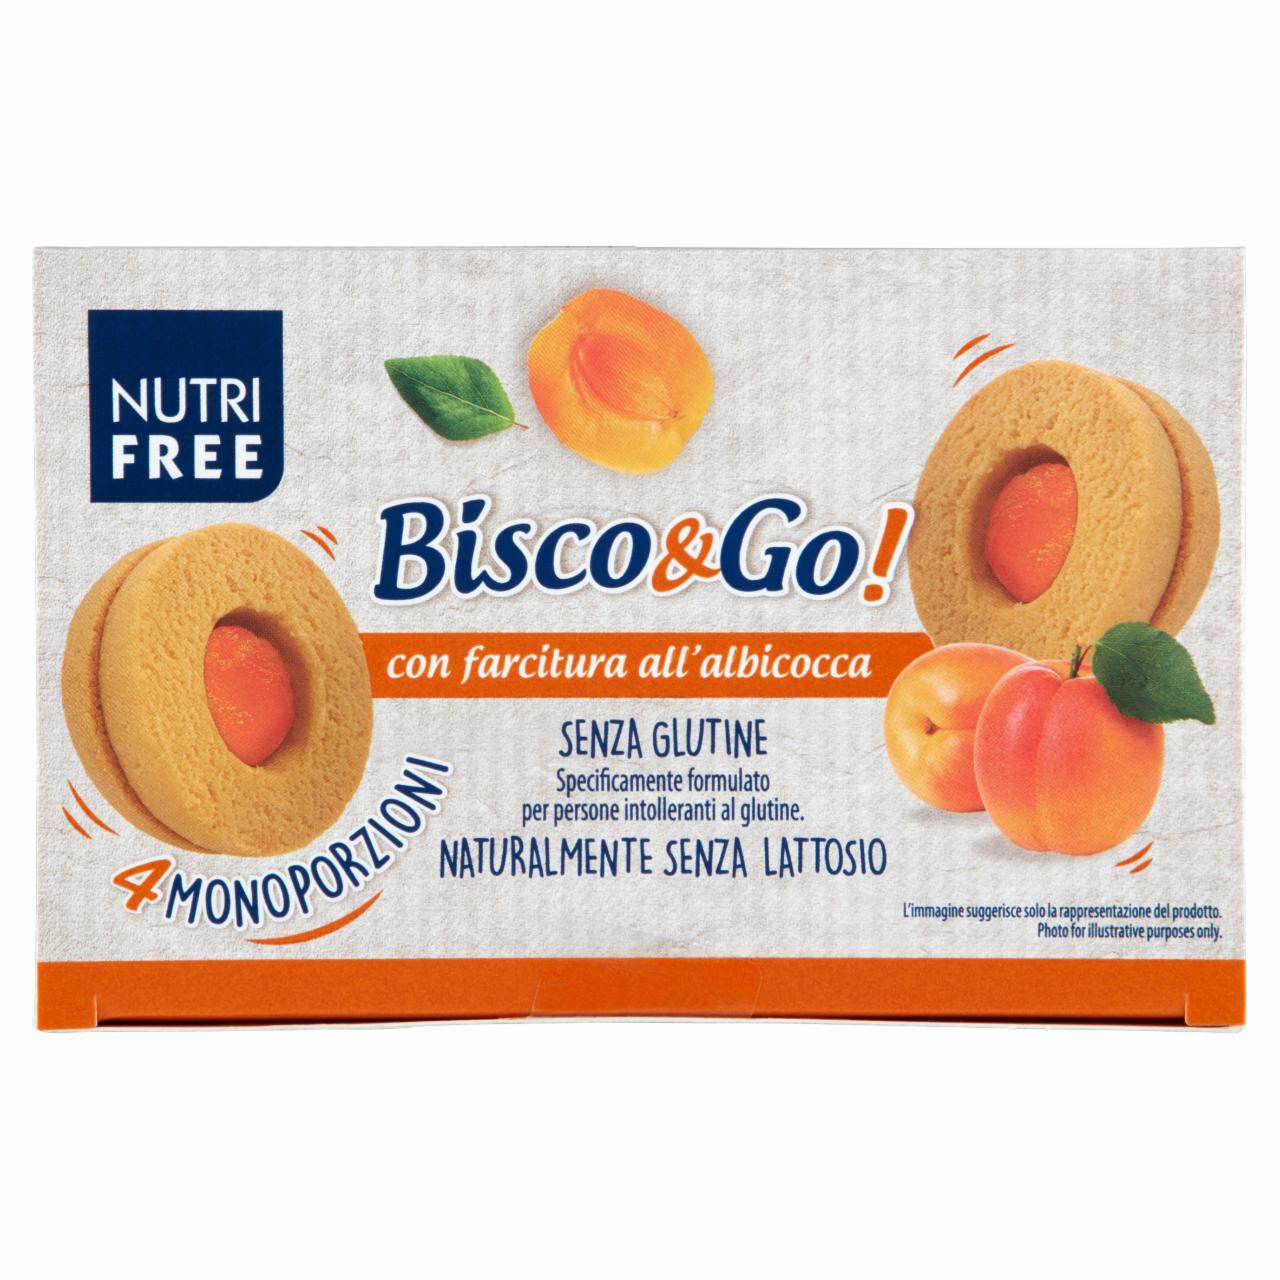 Képek - NutriFree Bisco&Go! gluténmentes linzer kajszibarackos töltelékkel 4 x 40 g (160 g)